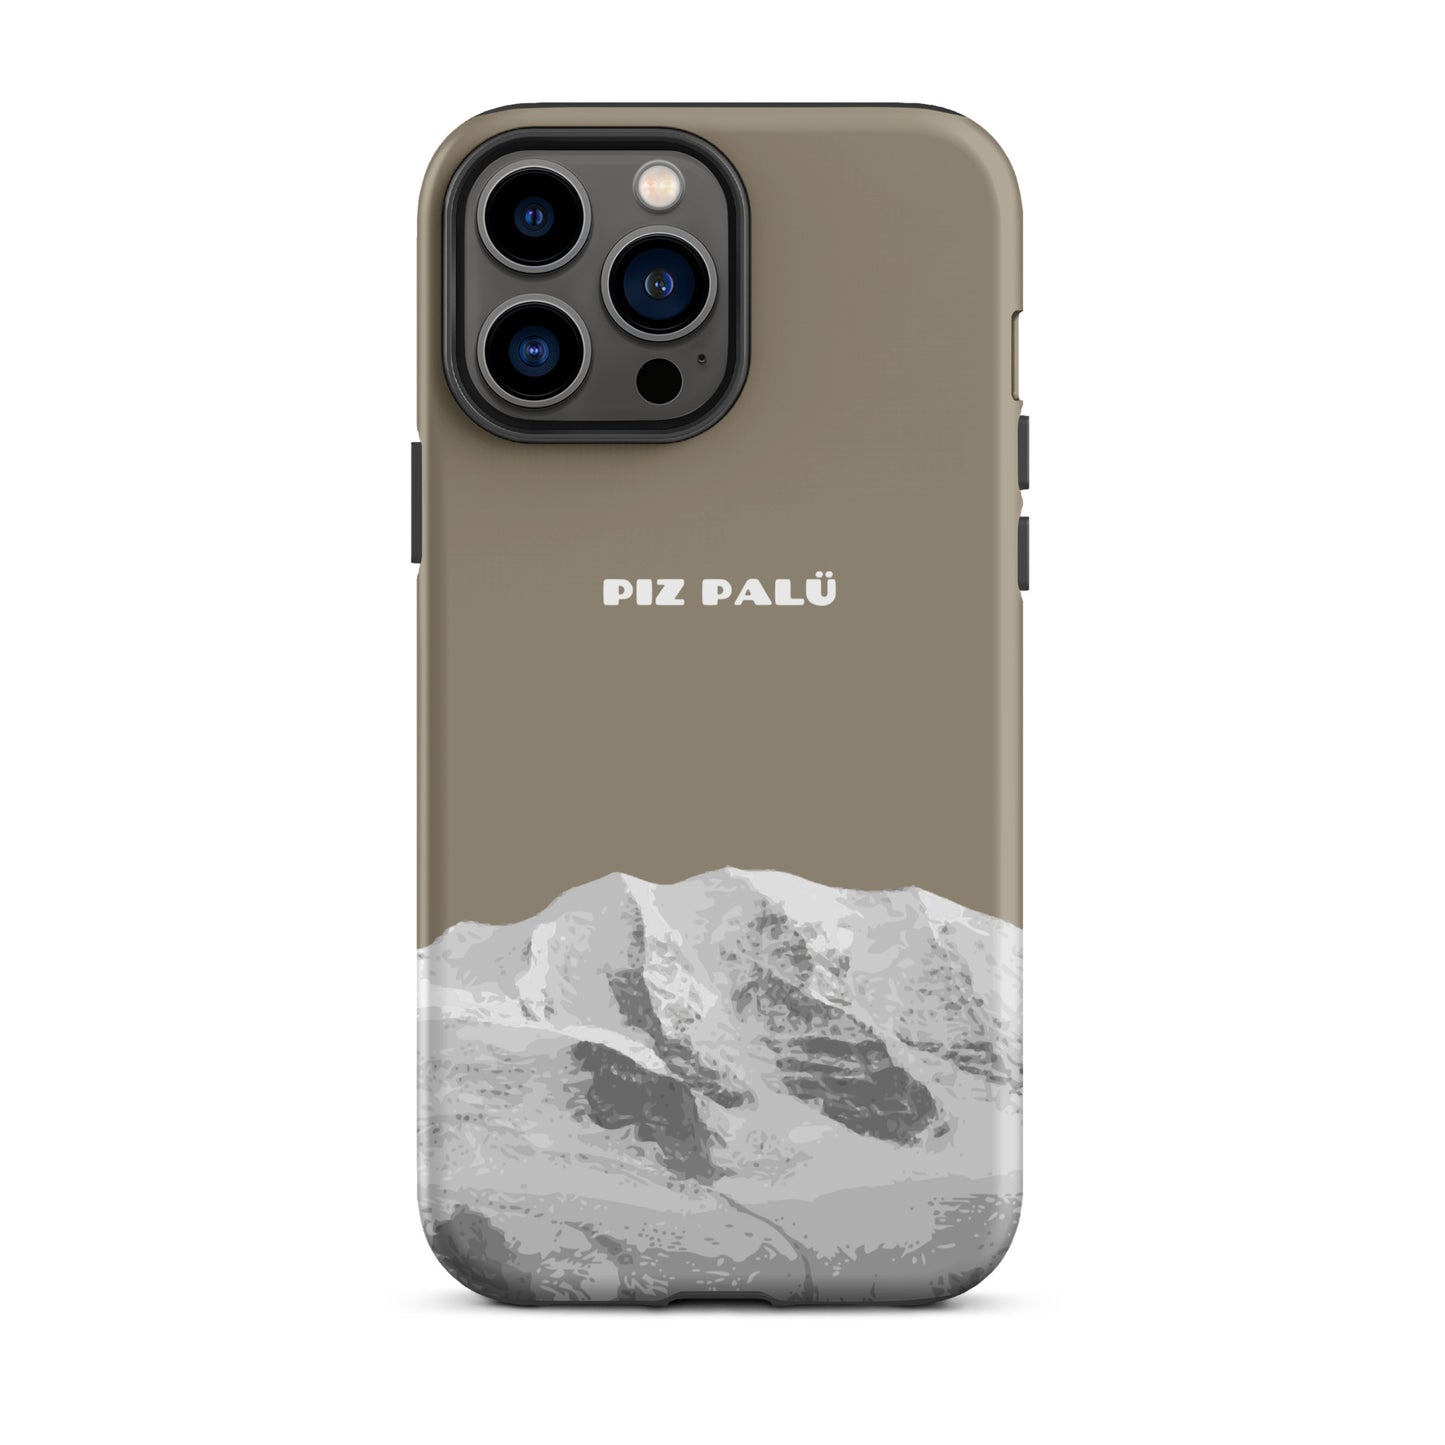 Hülle für das iPhone 13 Pro Max von Apple in der Farbe Graubrau, dass den Piz Palü in Graubünden zeigt.